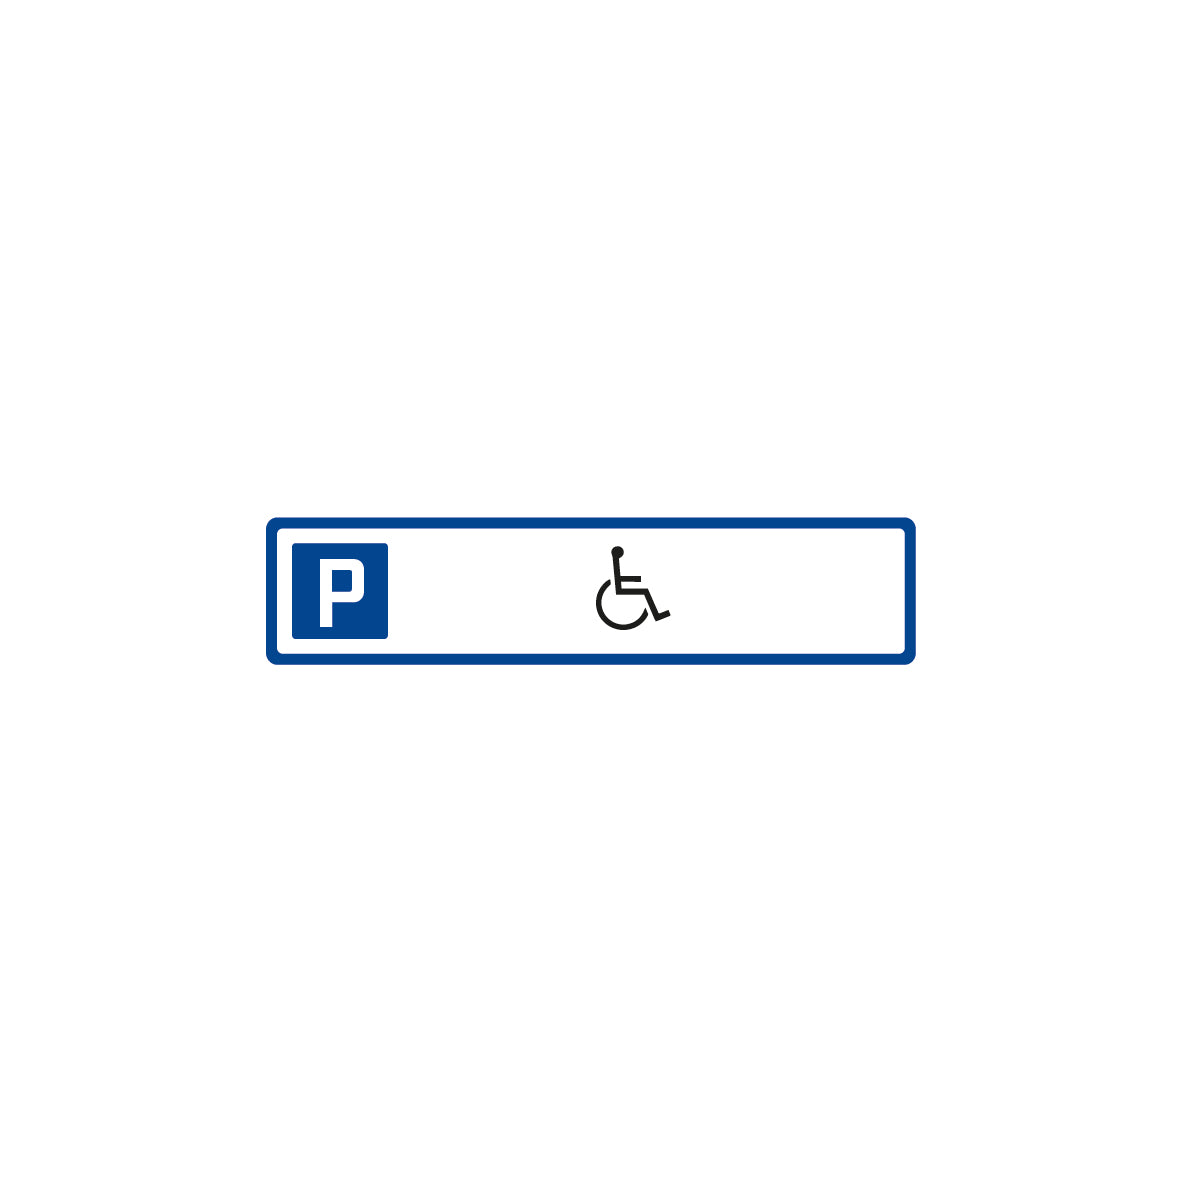 Parkplatzschild 7.0053, Behinderte, R1, 52 x 11 cm